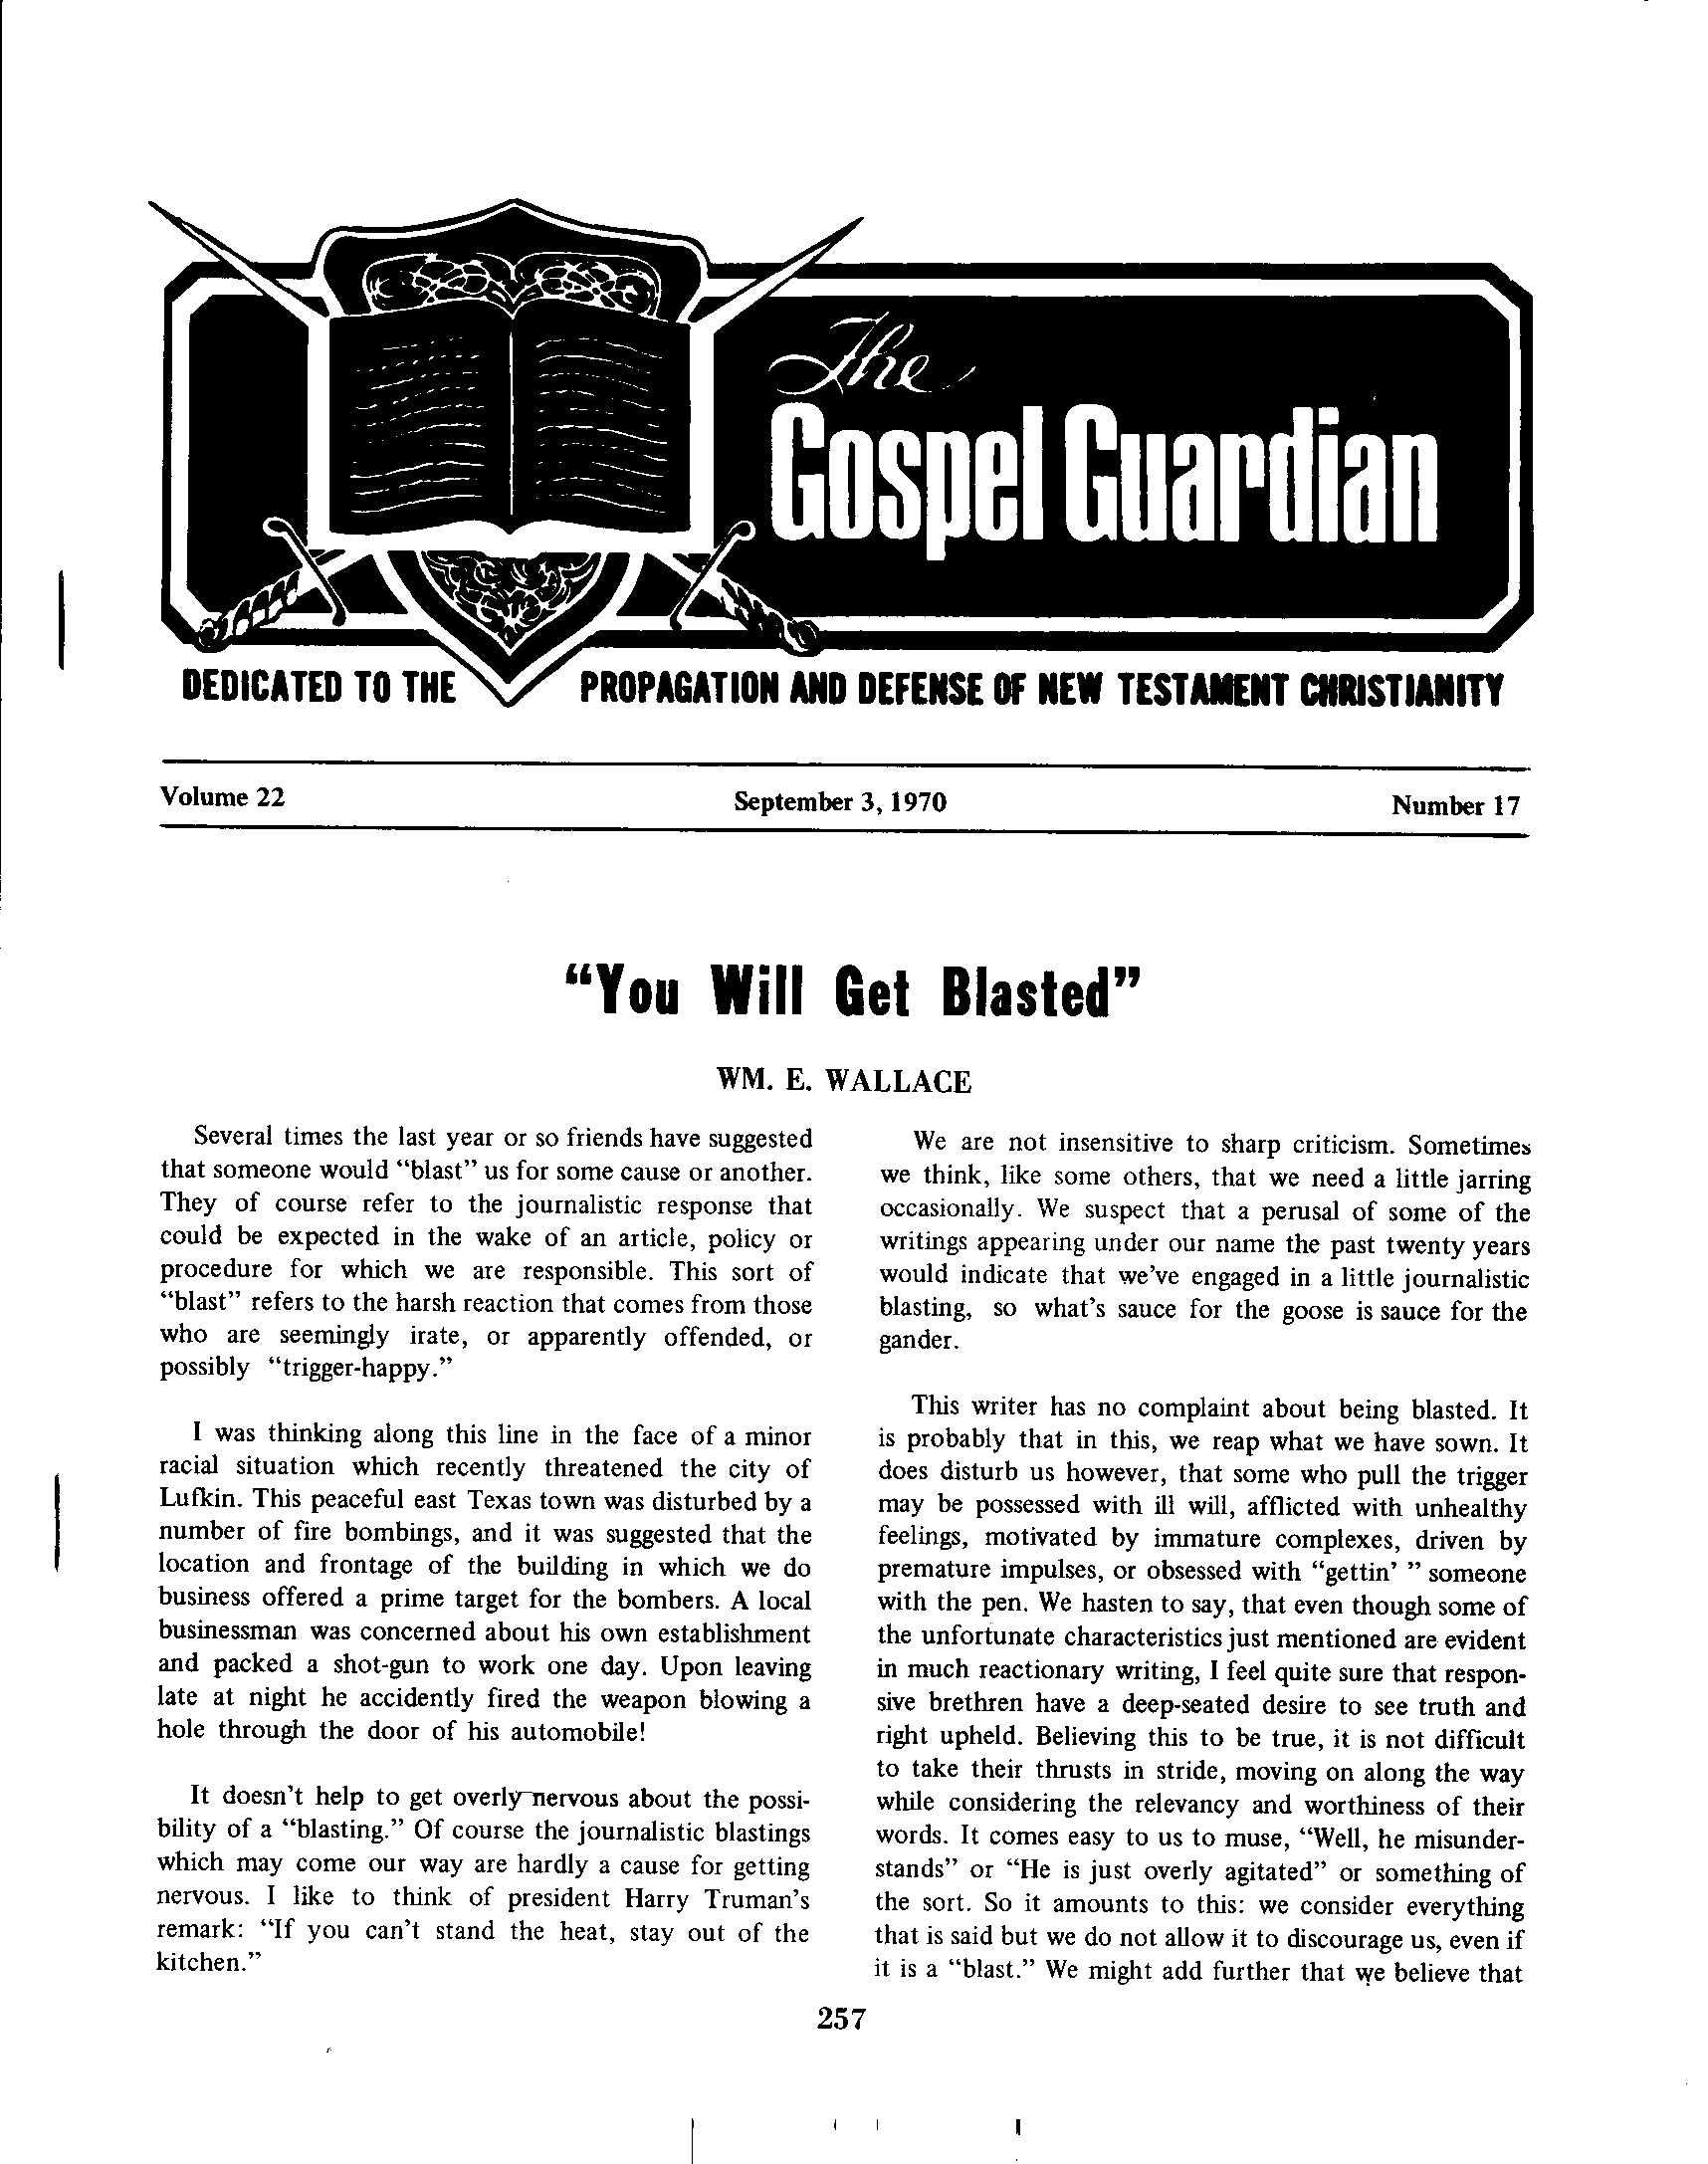 Gospel Guardian Original: Vol.22 No.17 Pg.1